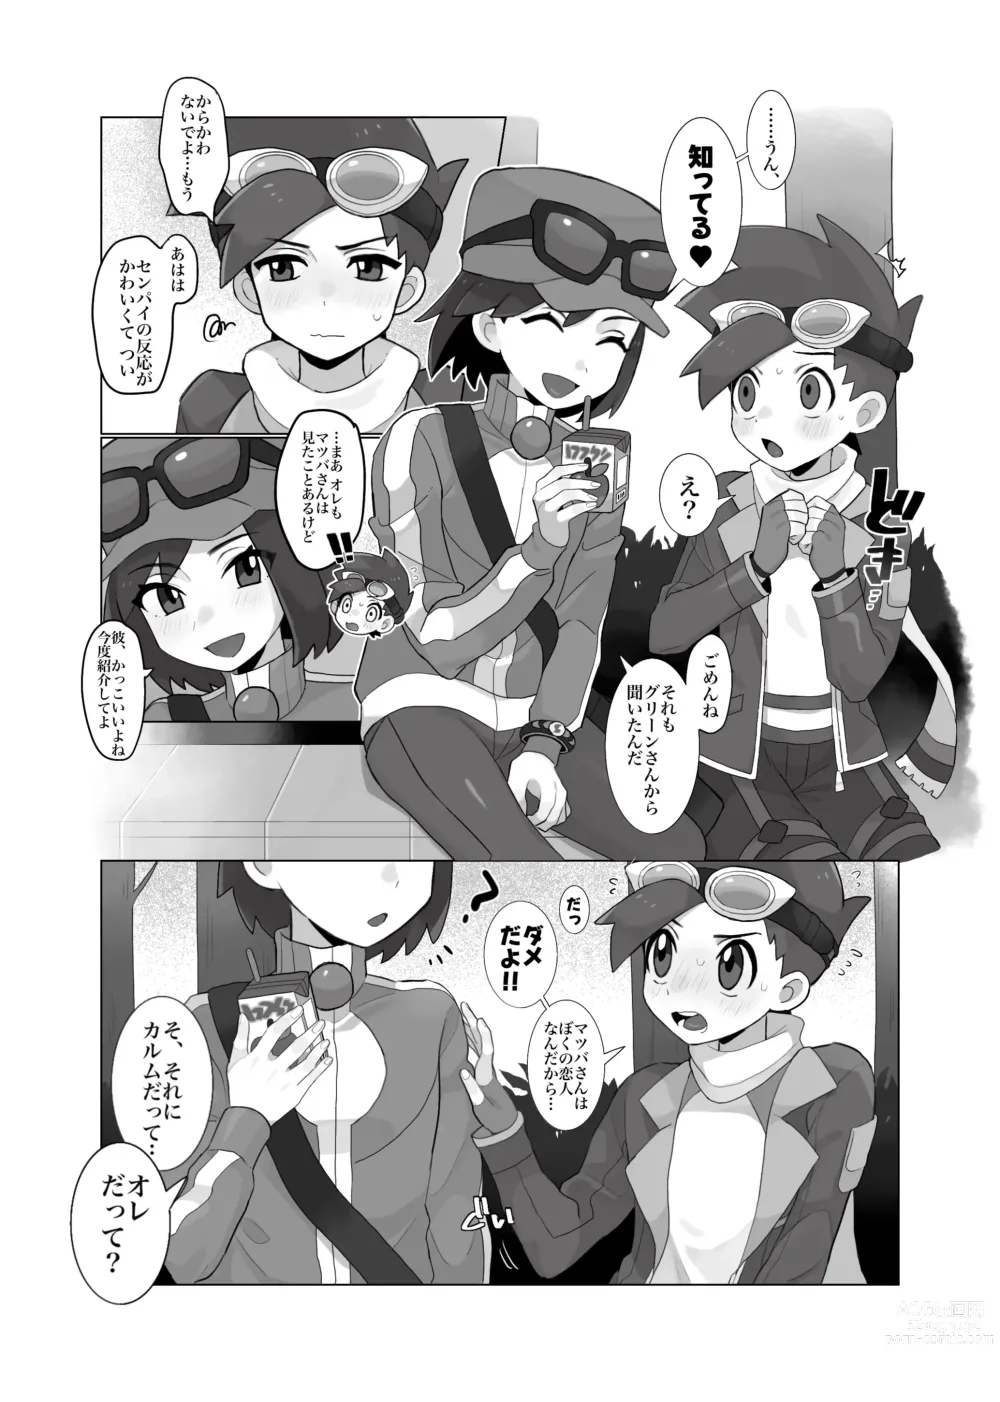 Page 6 of doujinshi [さな]  (ポケモン)